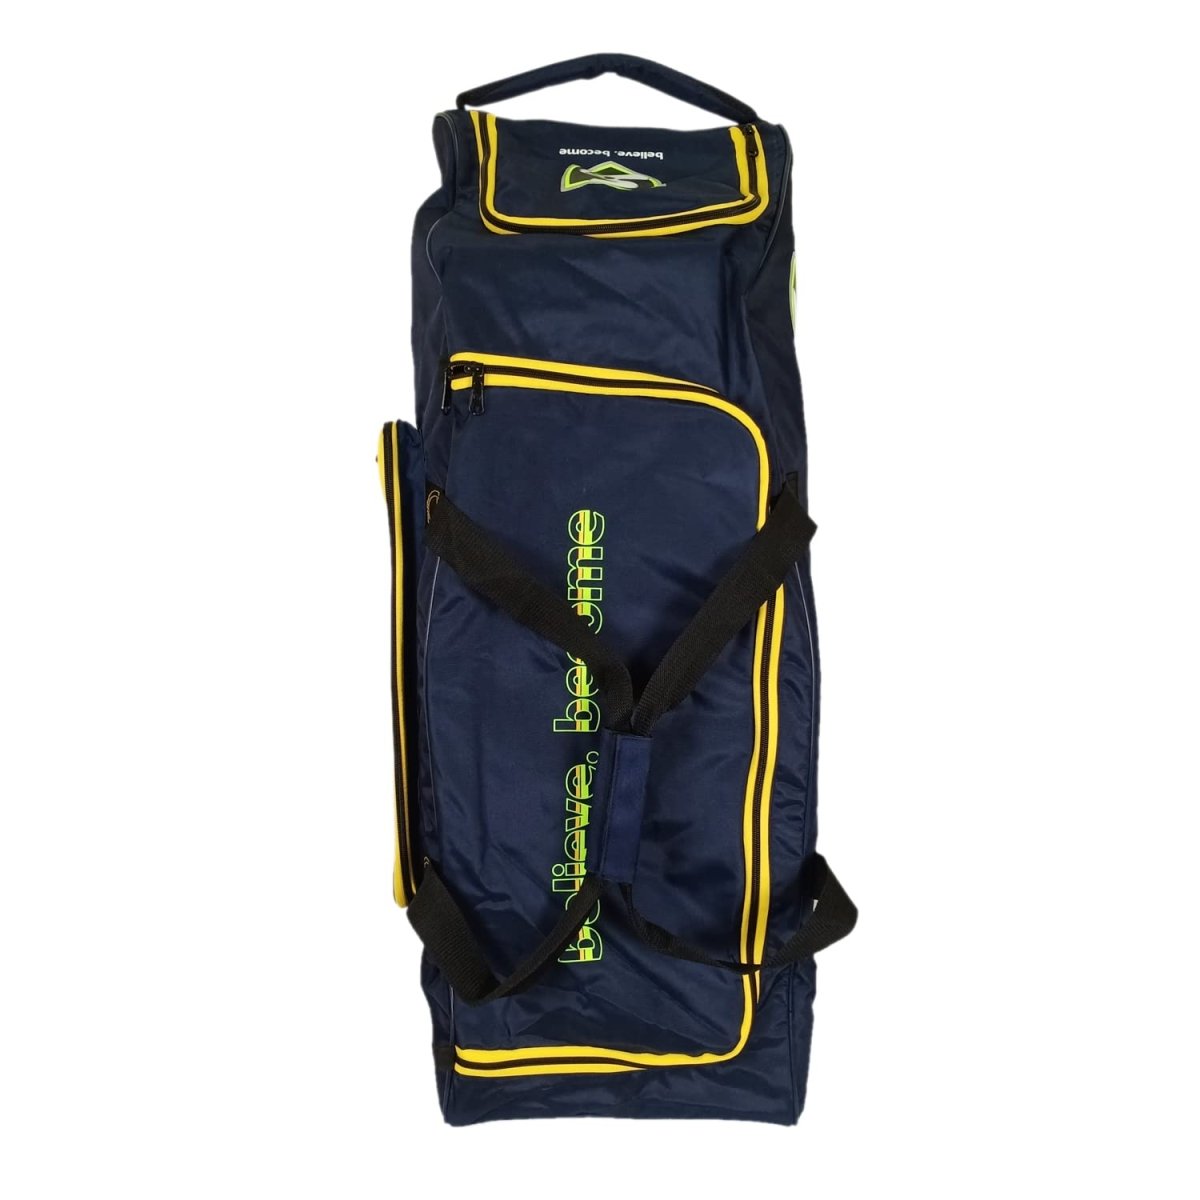 SG Smartpak 1.0 Cricket Wheelie Kit Bag